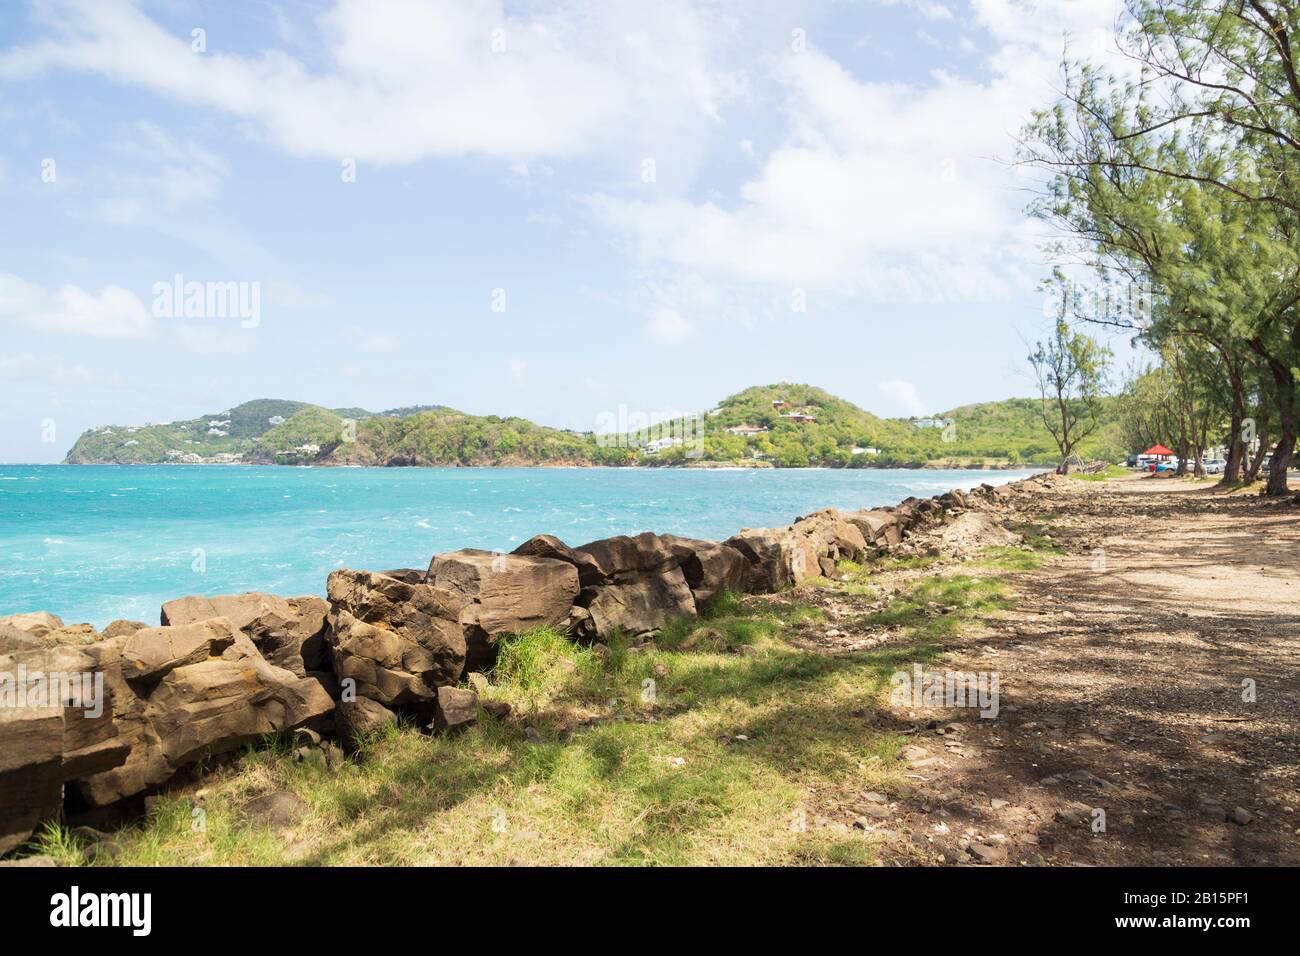 Paysage côtier à couper le souffle lors d'une journée lumineuse dans la Sainte-Lucie tropicale Banque D'Images